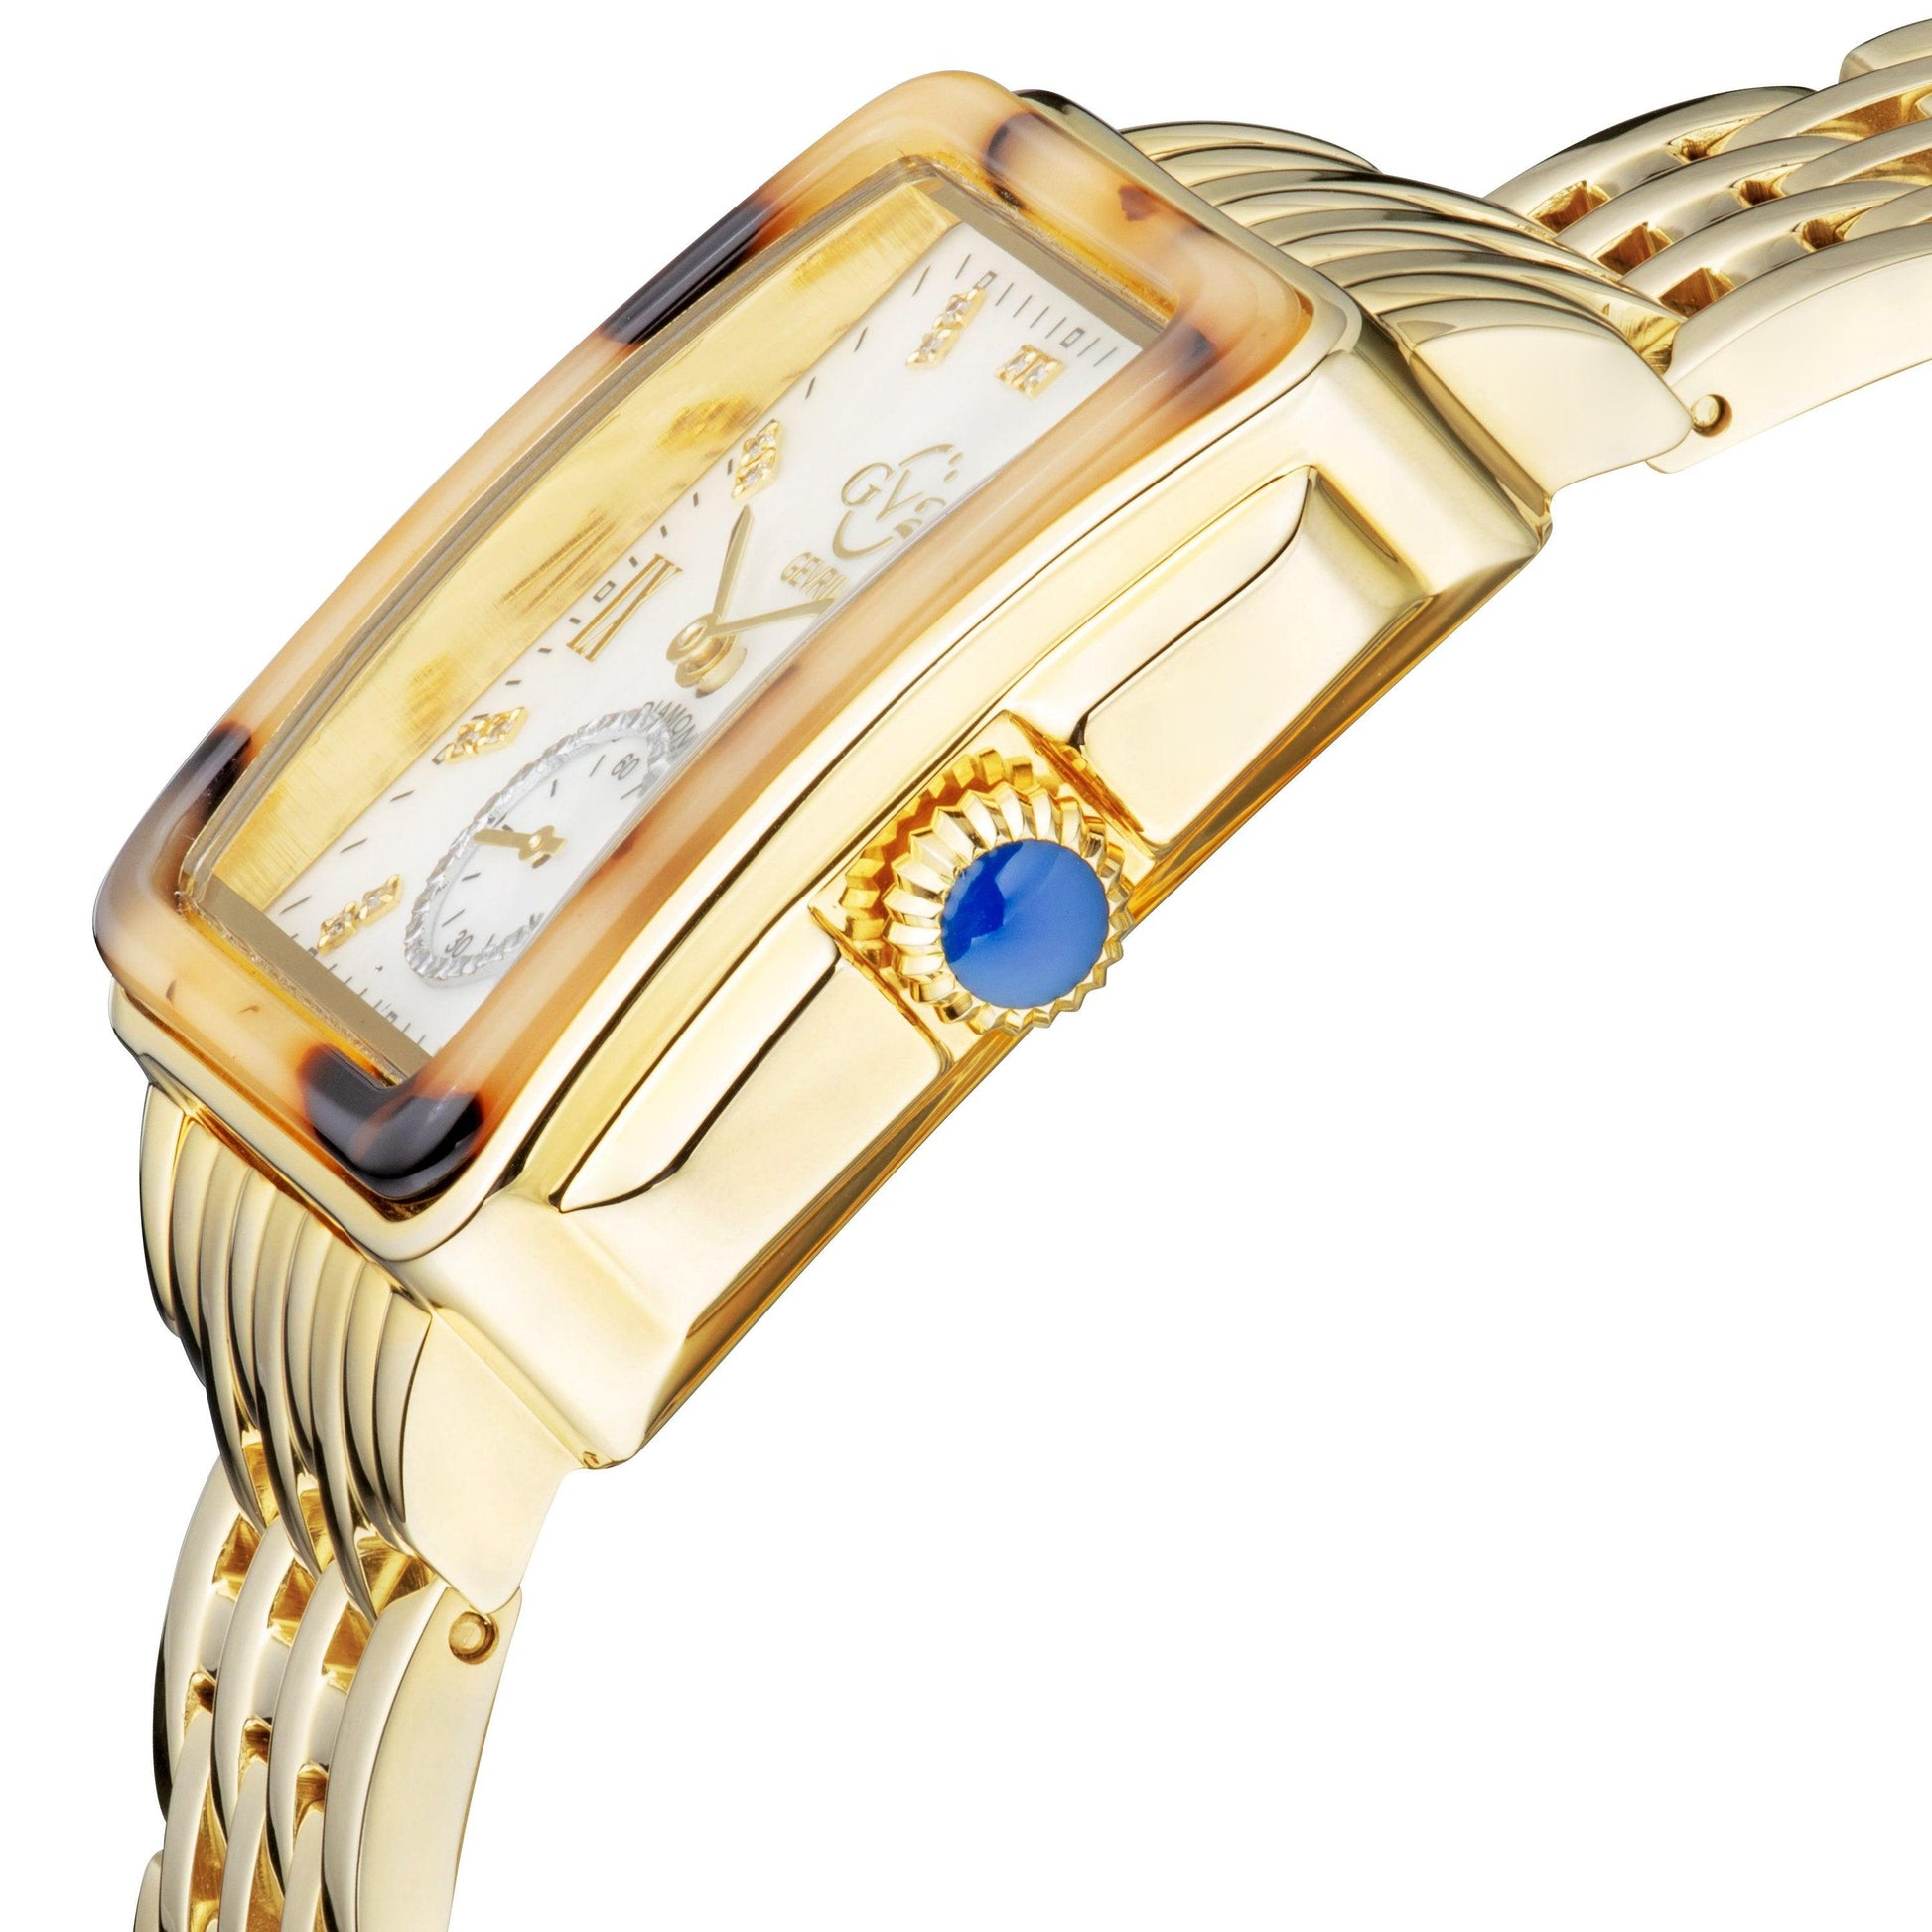 Gevril-Luxury-Swiss-Watches-GV2 Bari Tortoise Diamond-9246B